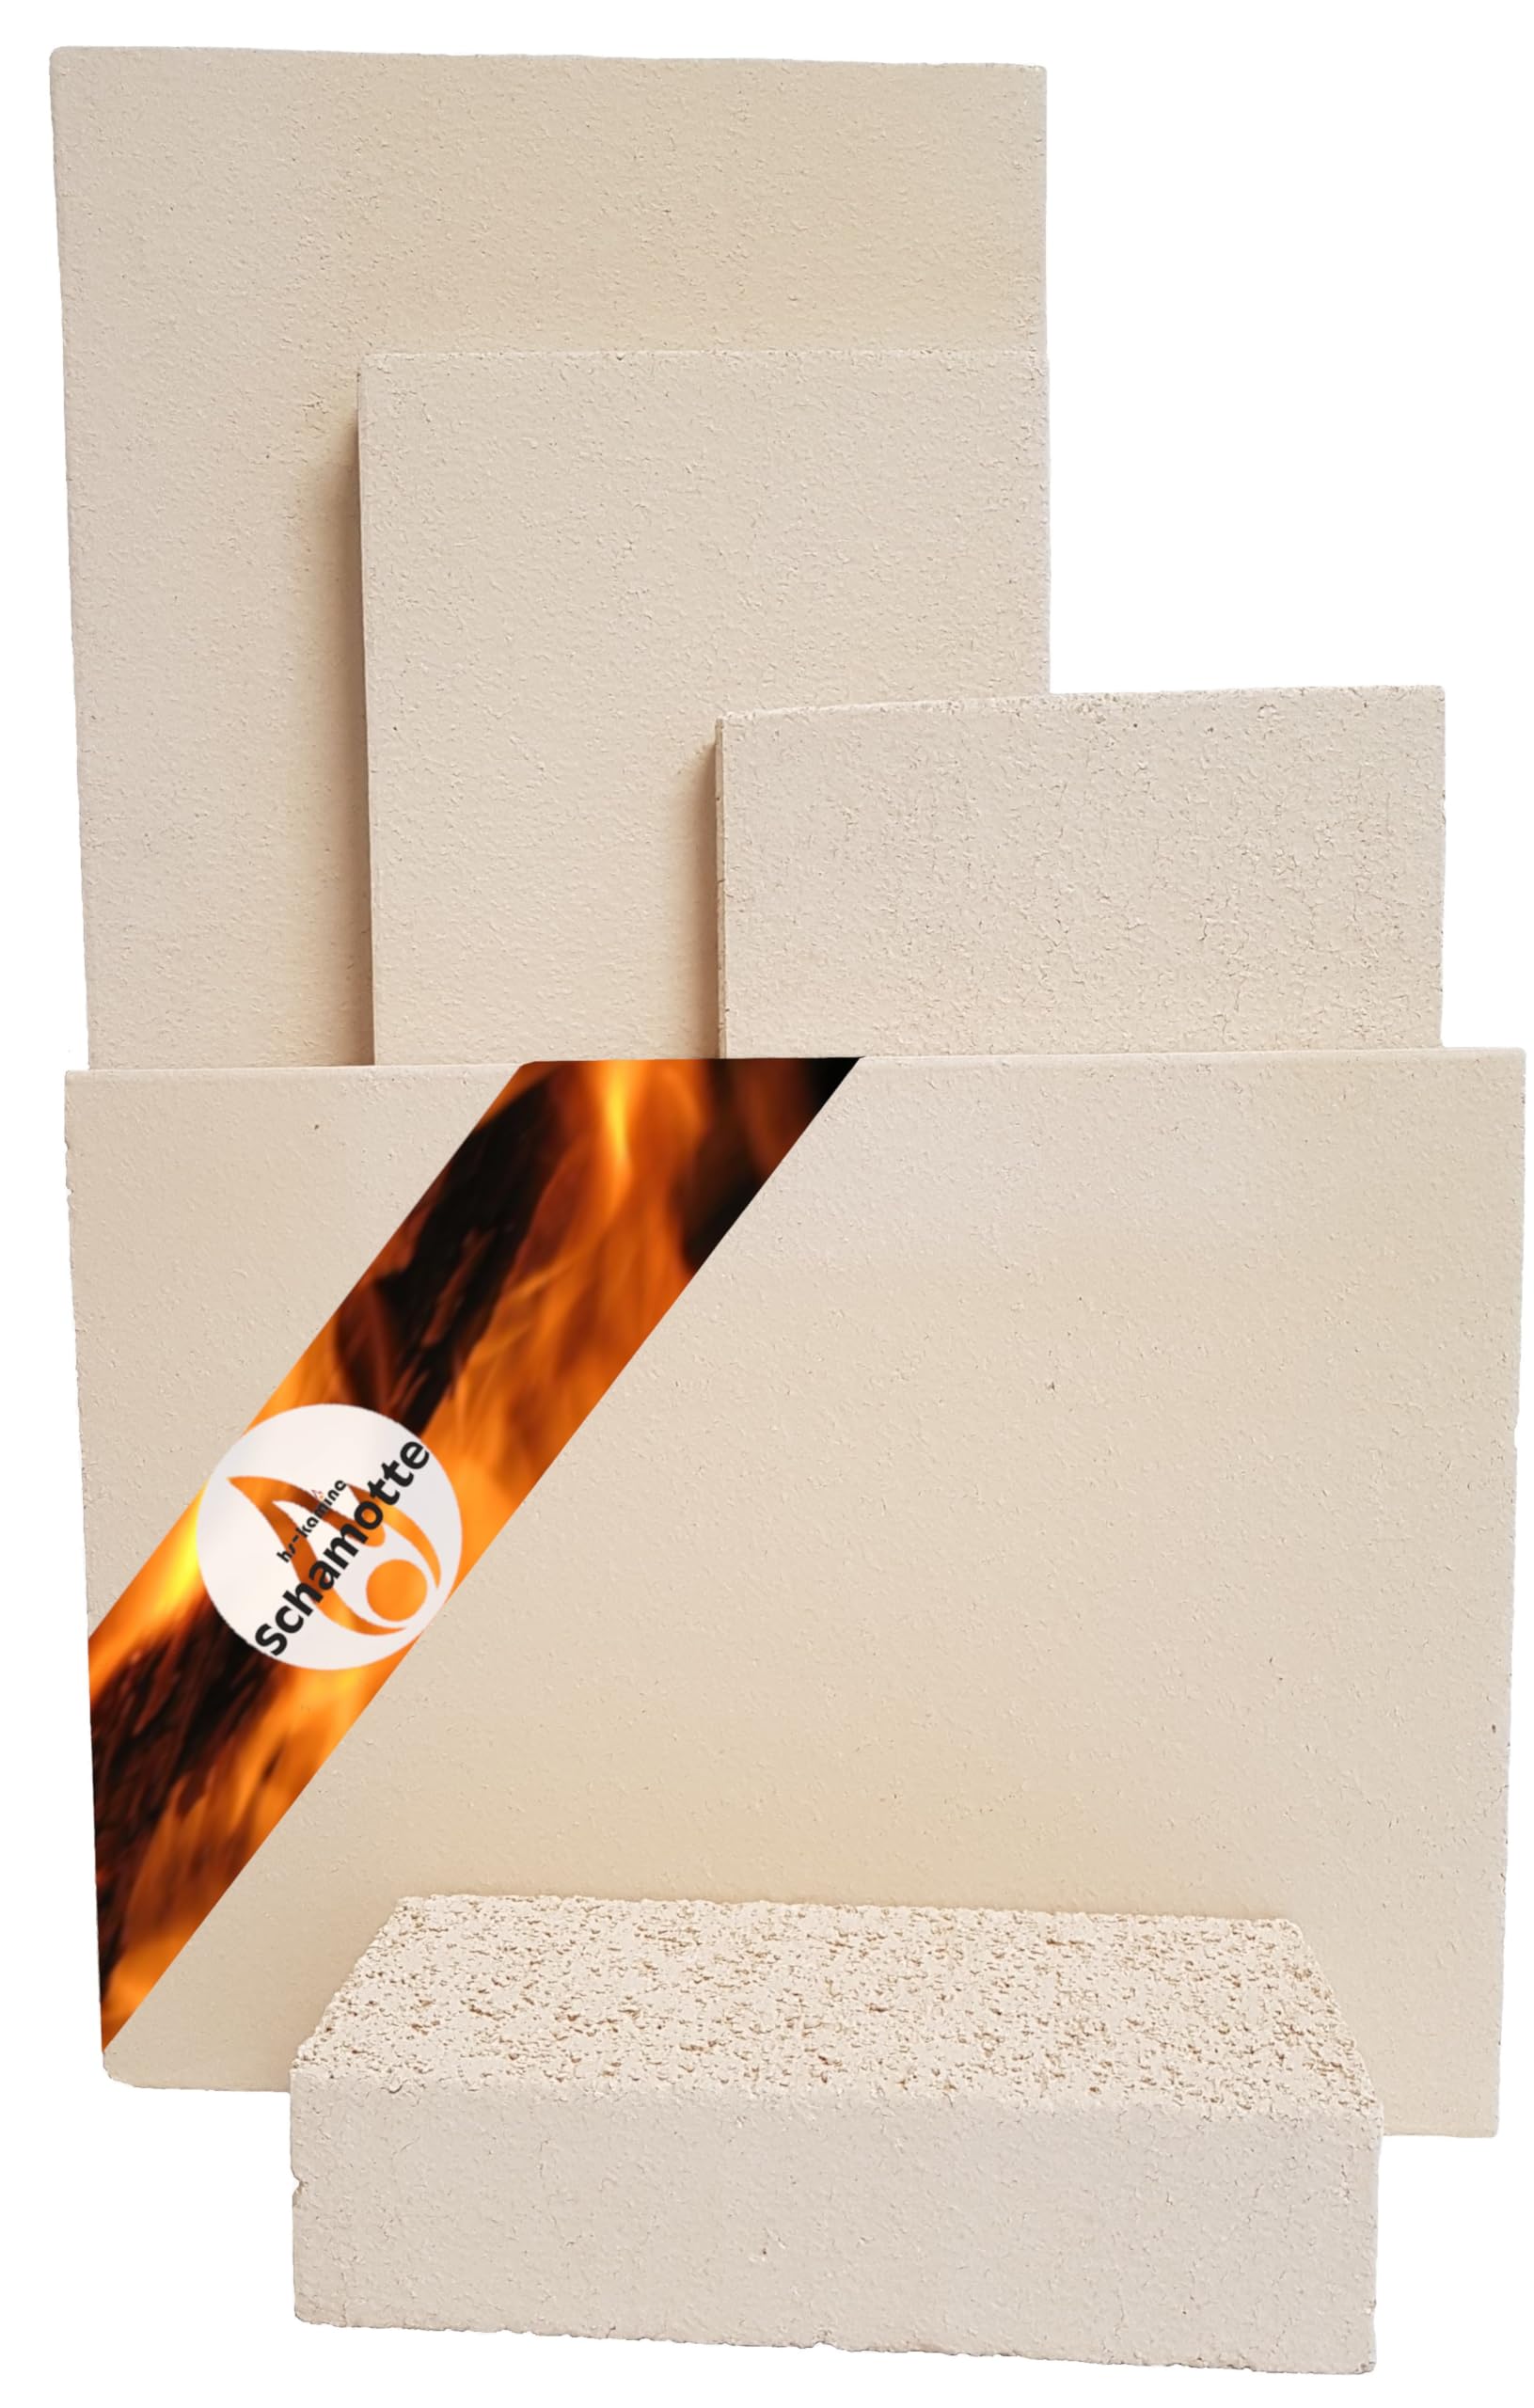 Schamotteplatten Premium Wh für den Feuerraum und auch für Holzbacköfen, Pizzaöfen und Grills feuerfest & lebensmittelecht viele Größen online verfügbar (400 x 300 x 40 mm, 2 Stück)